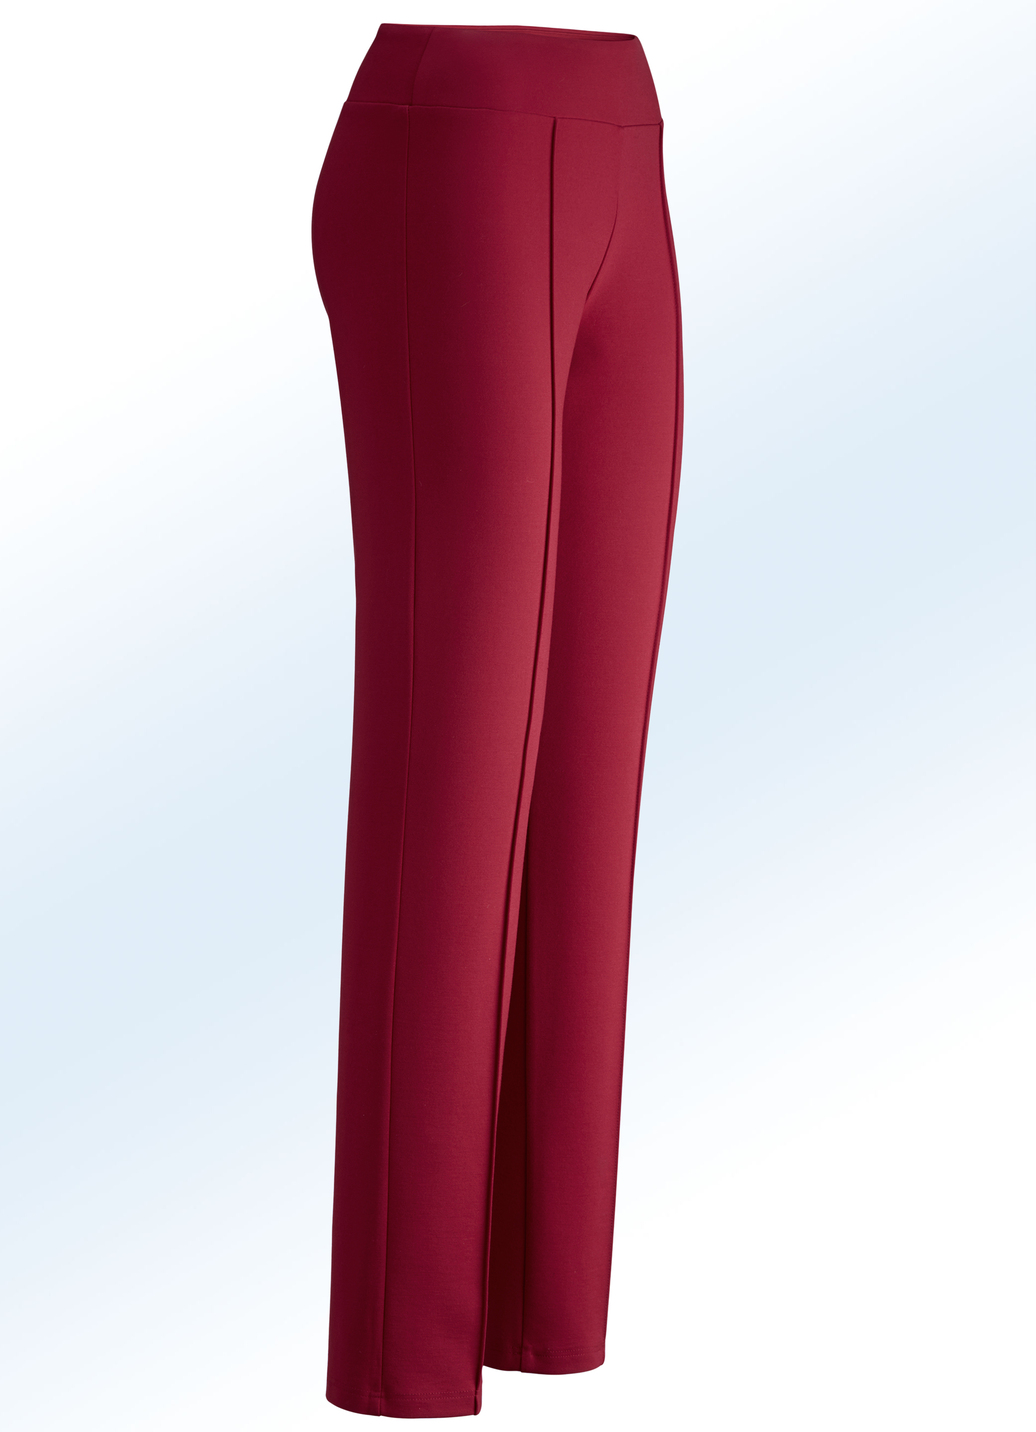 Jerseyhose mit höherem, elastischem Formbund, Rot, Größe 48 von BADER